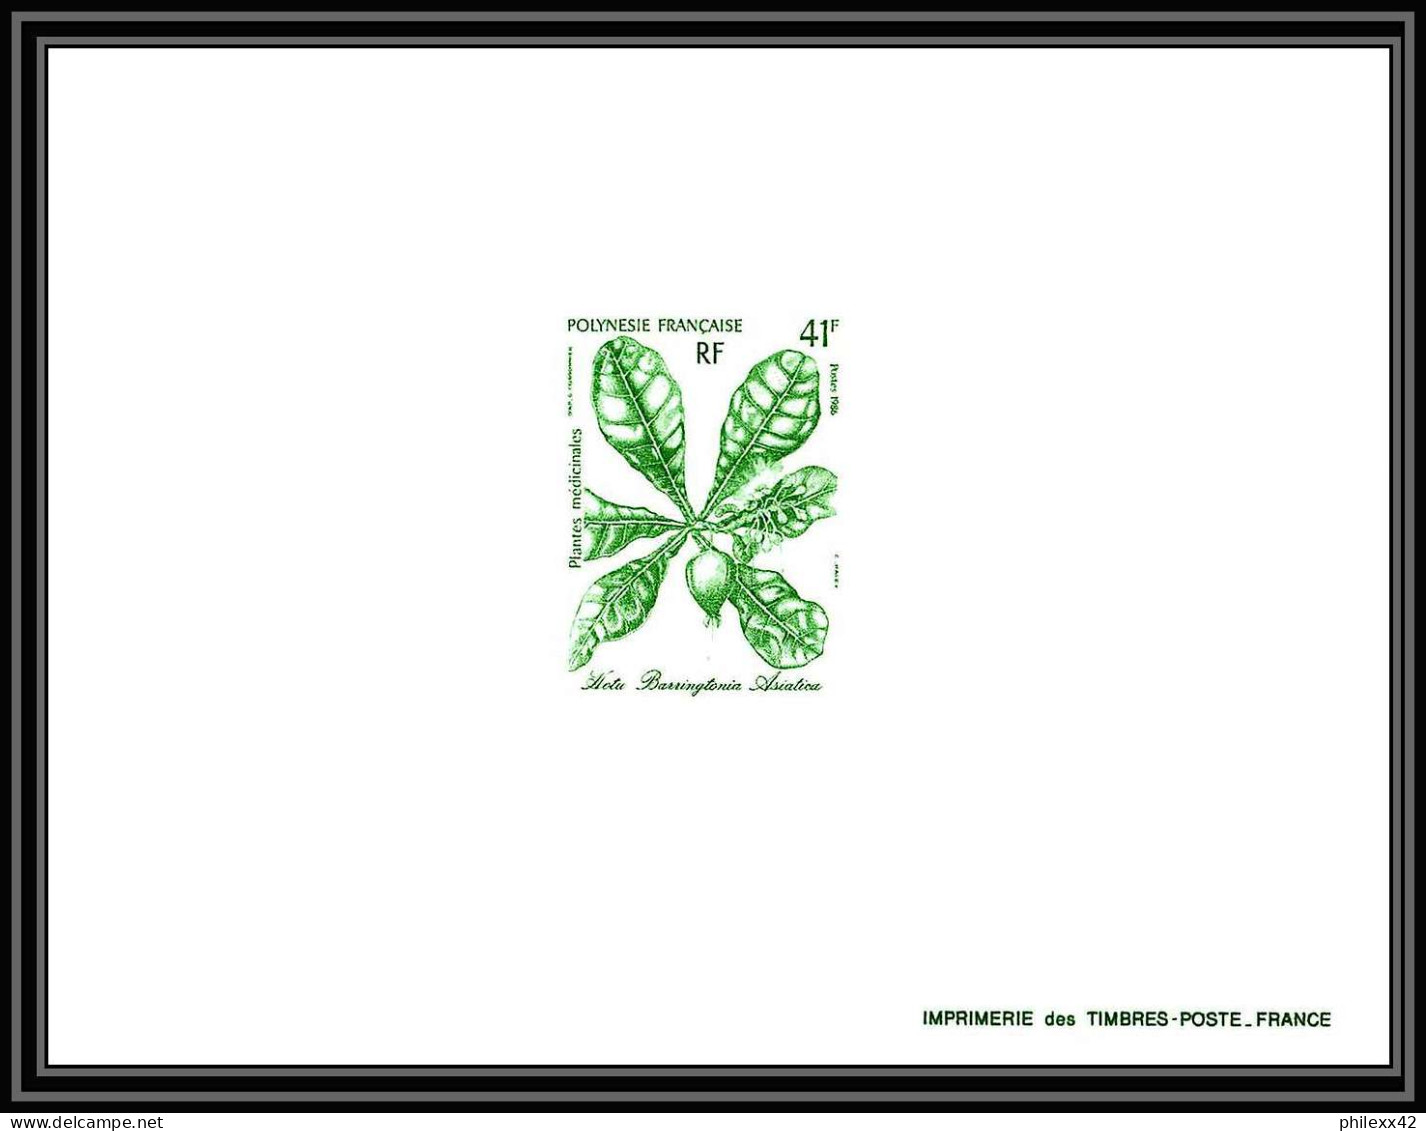 1510 épreuve de luxe / deluxe proof Polynésie (Polynesia) N° 268 / 270 (fleurs flowers) plantes médicinales + fdc TTB